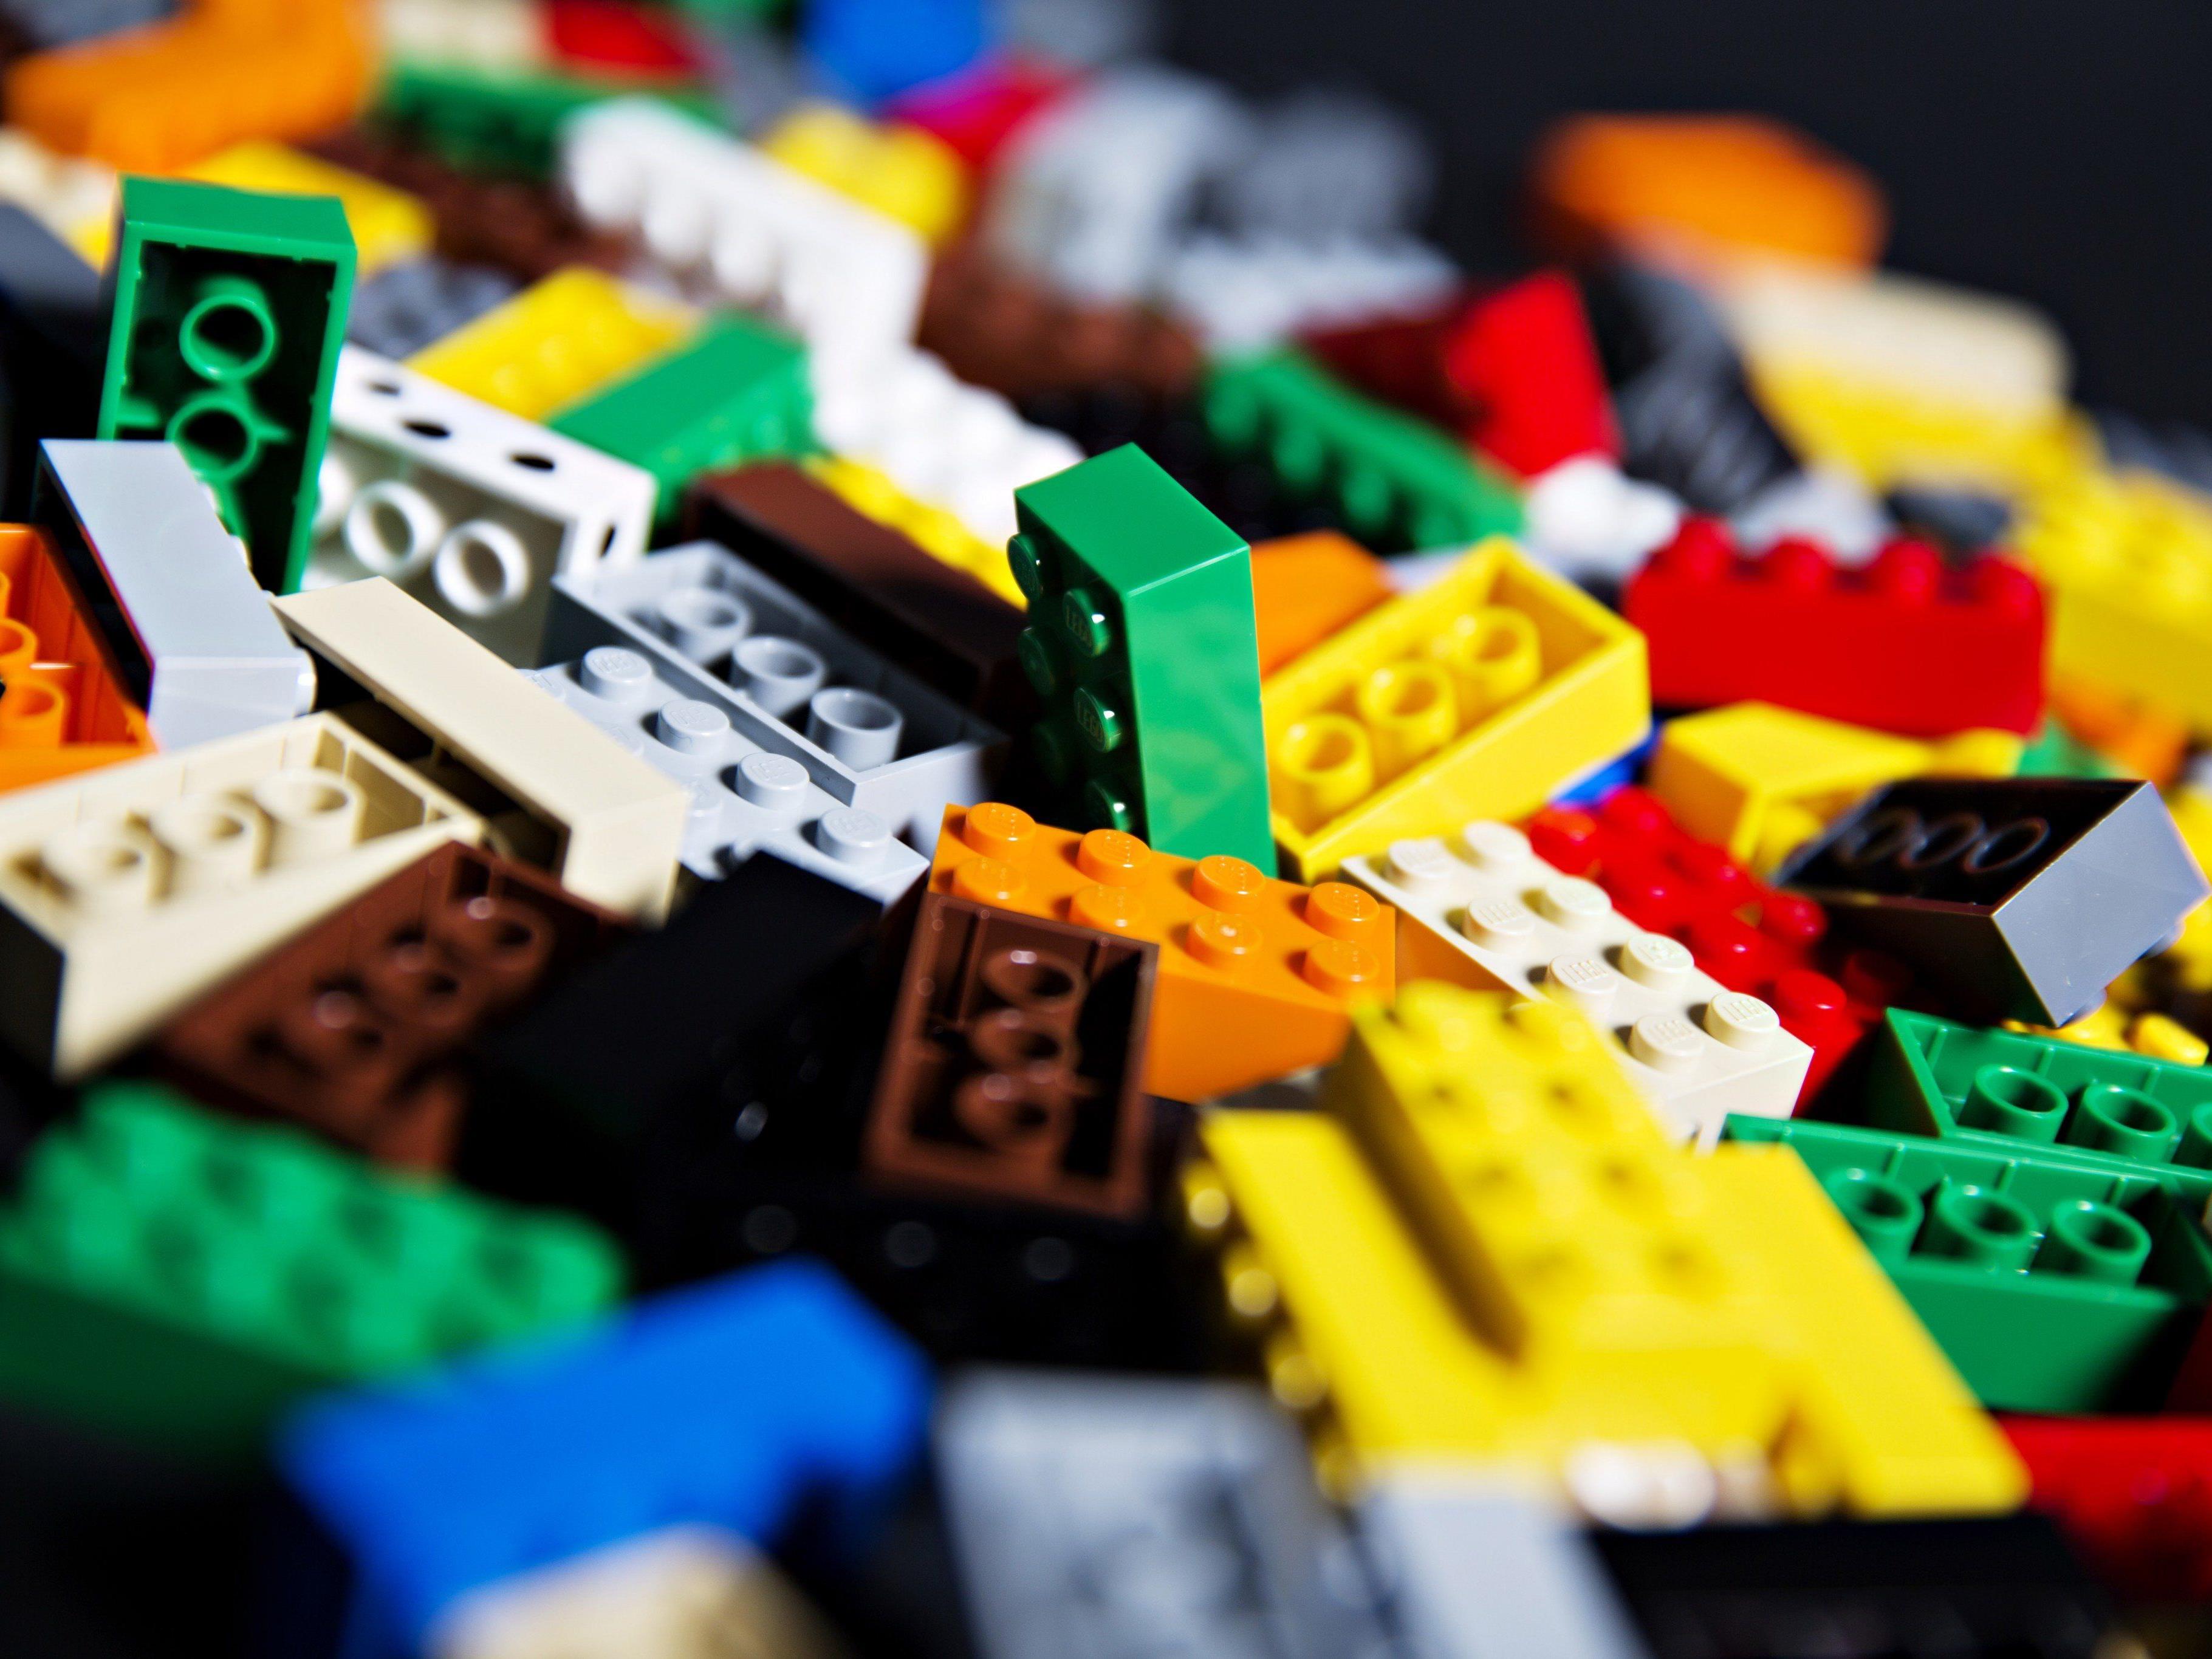 Lego ist eines der beliebtesten Spielzeuge für Kinder.